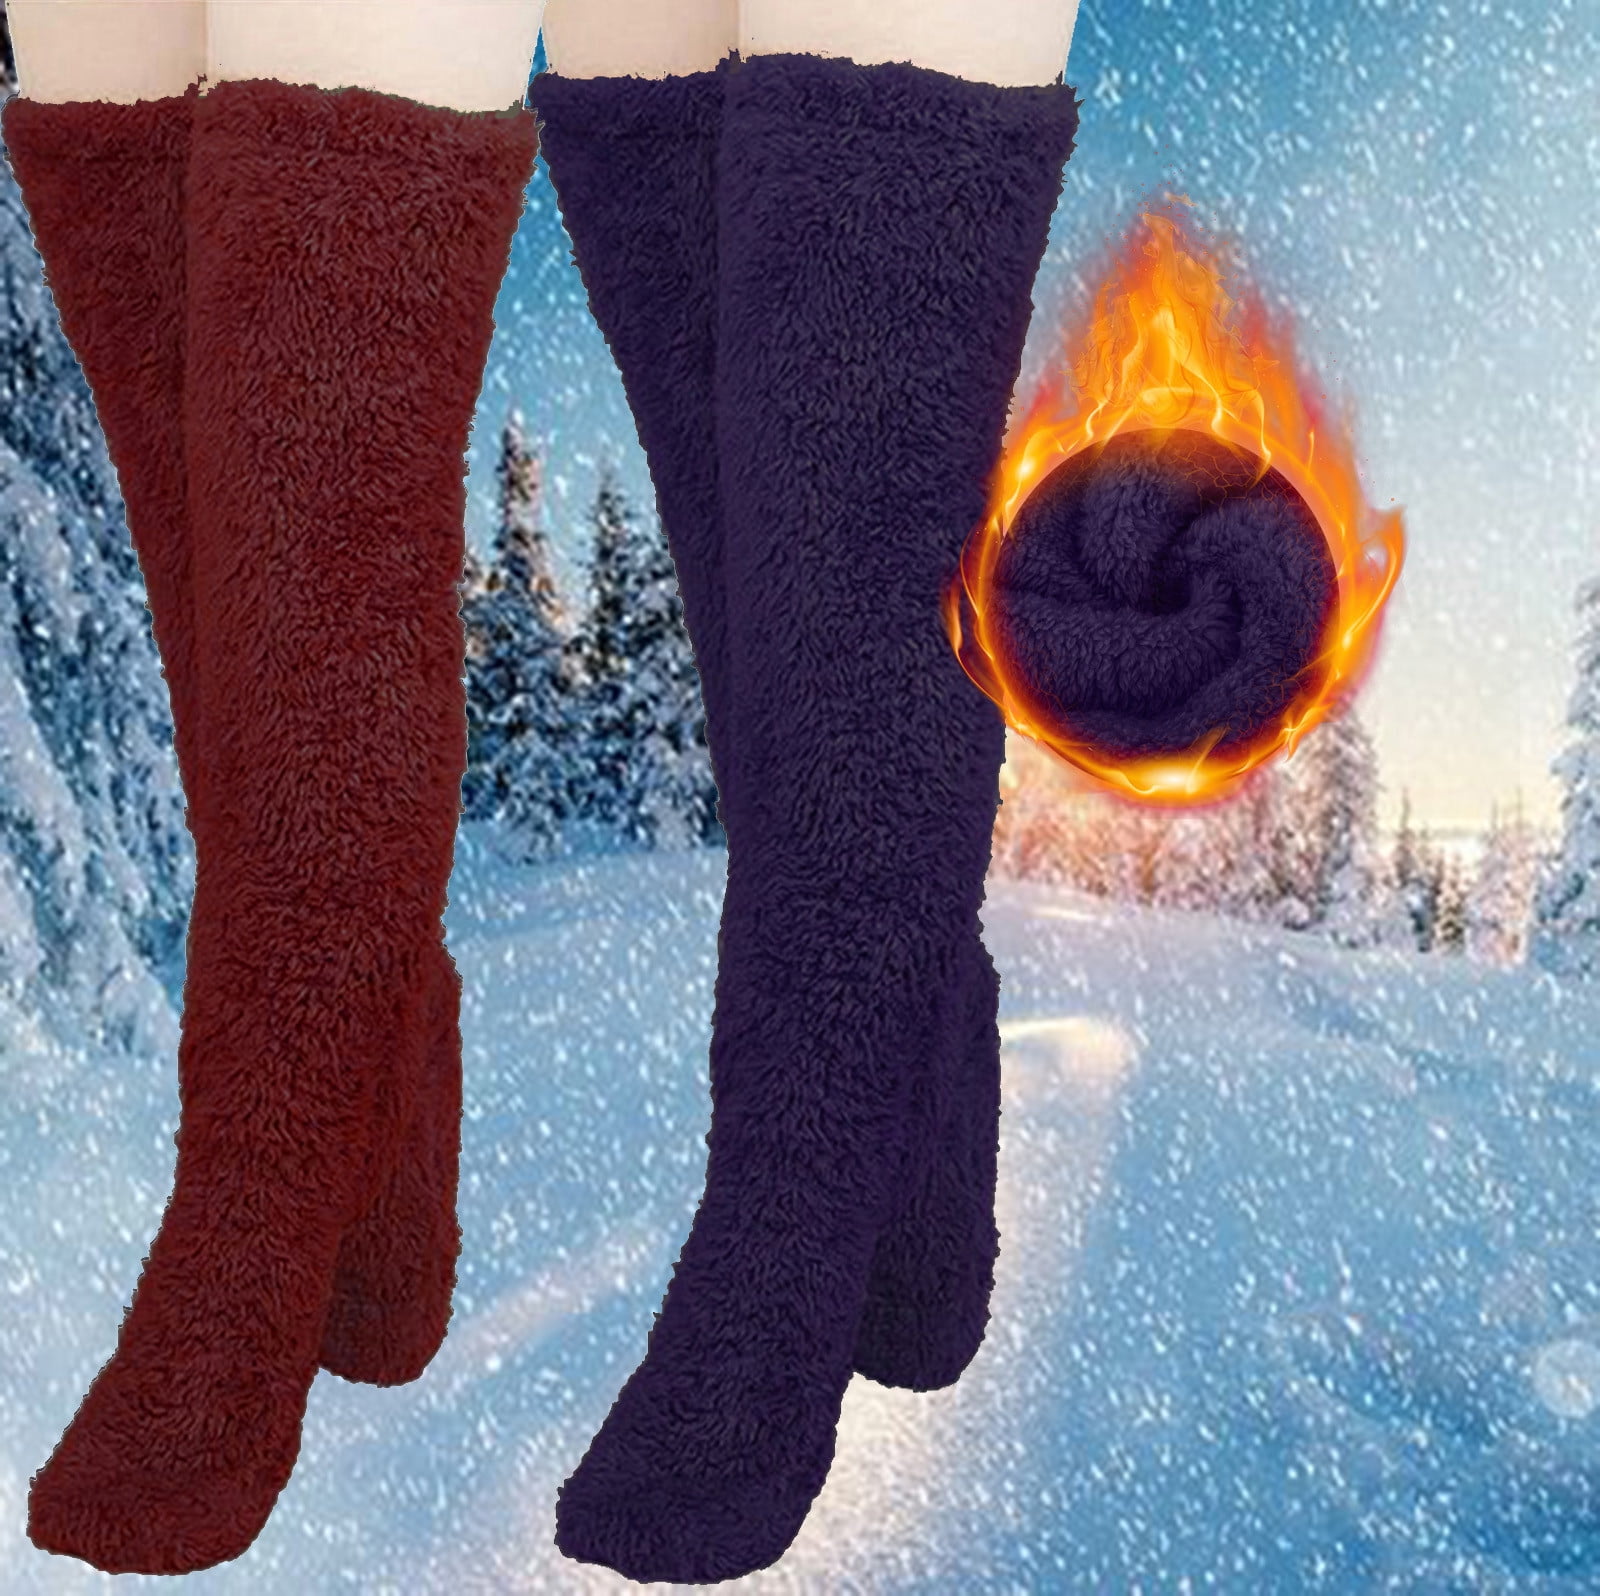 Brnmxoke 2 Pairs Women Fuzzy Socks Cozy Soft Fluffy Cute Teddy Legs ...